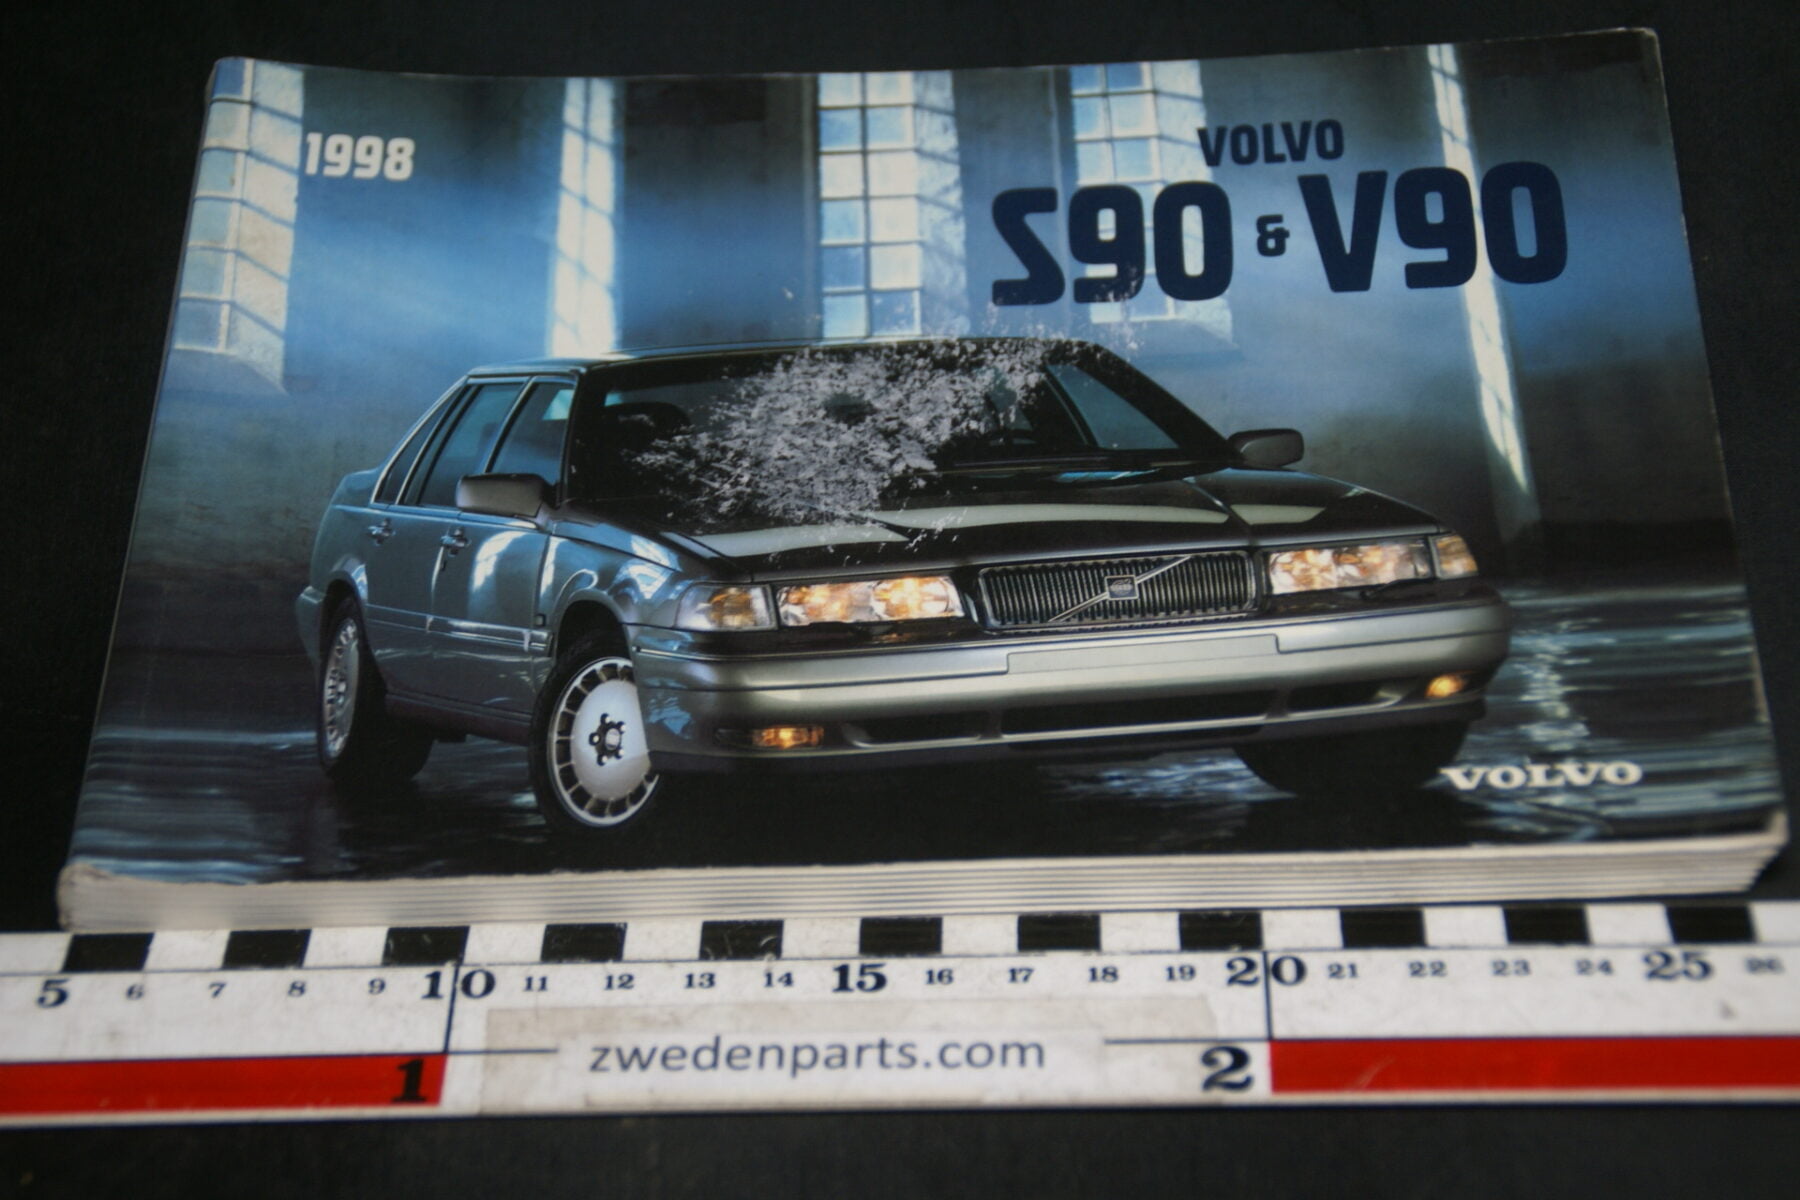 DSC03994 1997 instructieboekje Volvo S90 V90 1 van 1.800 TP4138 1 Deutsch